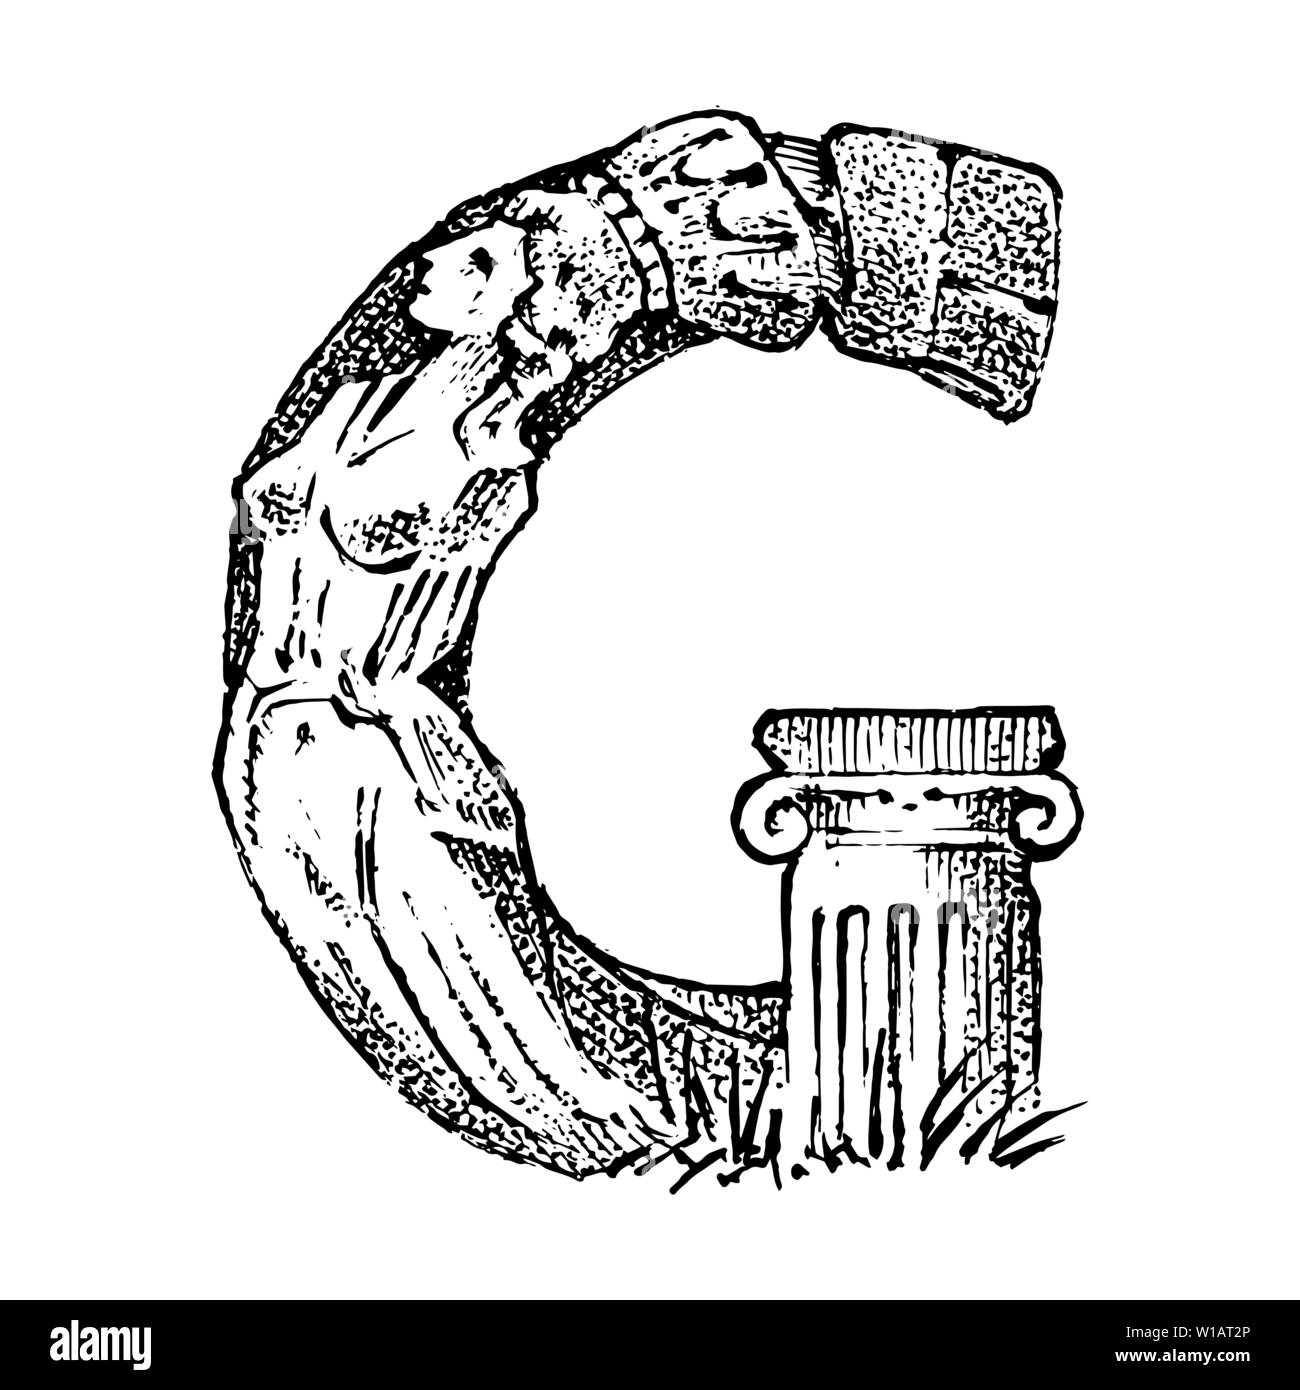 Antike Antike Großbuchstabe G mit einem Ornament. Die griechische Kultur. Double Exposure. Hand graviert Skizze im Vintage Style. Stock Vektor